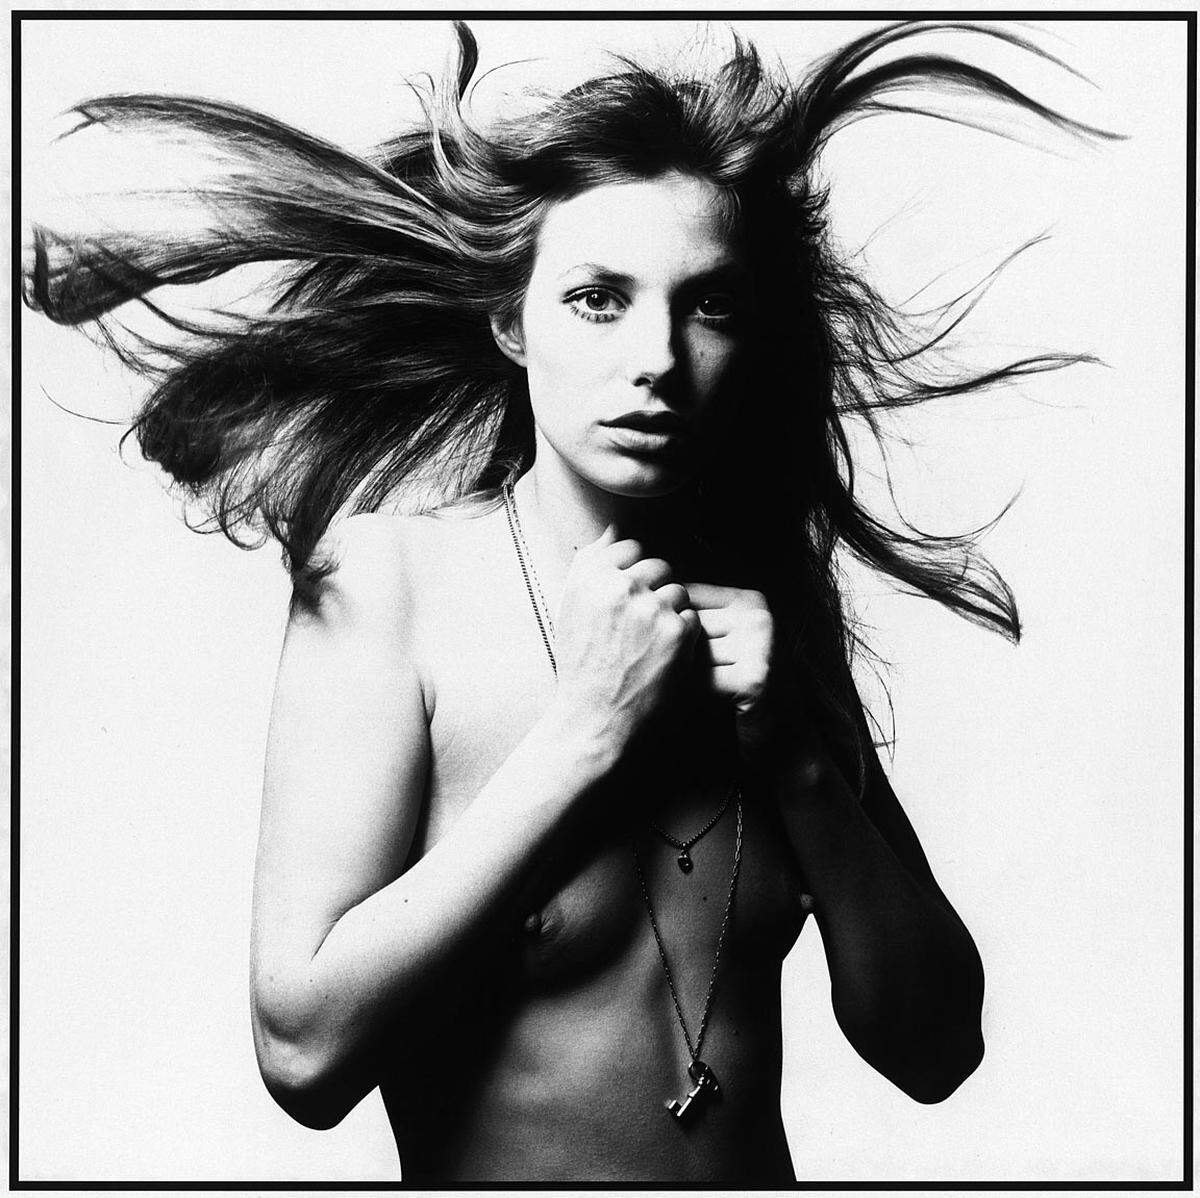 ... die britische Schauspielerin und Sängerin Jane Birkin zeigt sich mit blanker Brust und wallendem Haar, ...  Im Bild: David Bailey: Jane Birkin, 1969. © David Bailey 